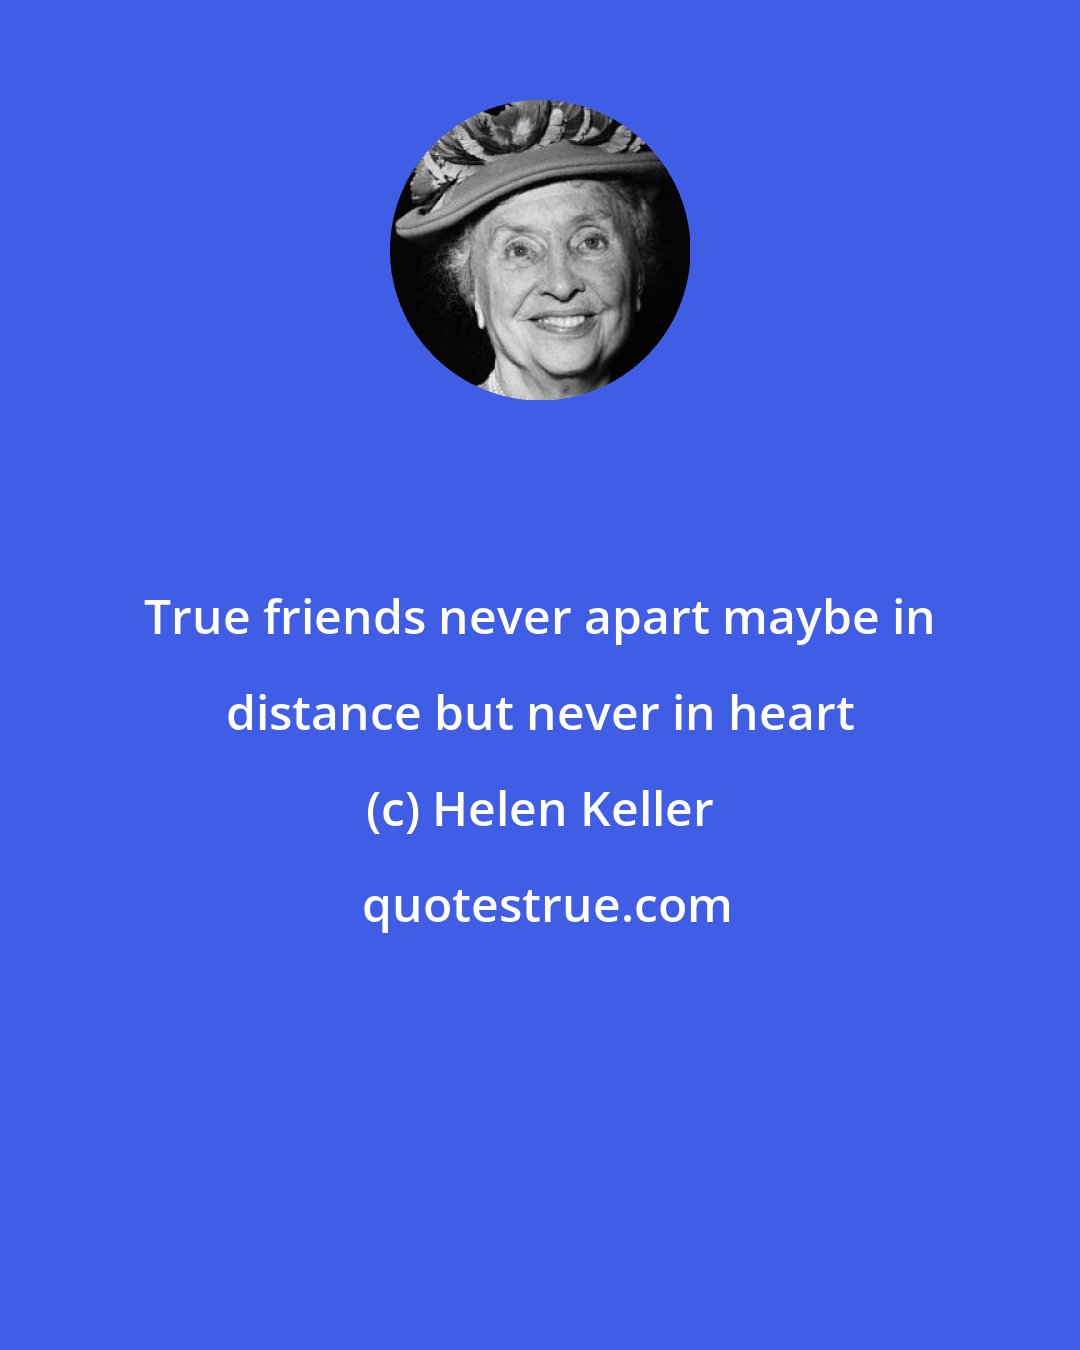 Helen Keller: True friends never apart maybe in distance but never in heart